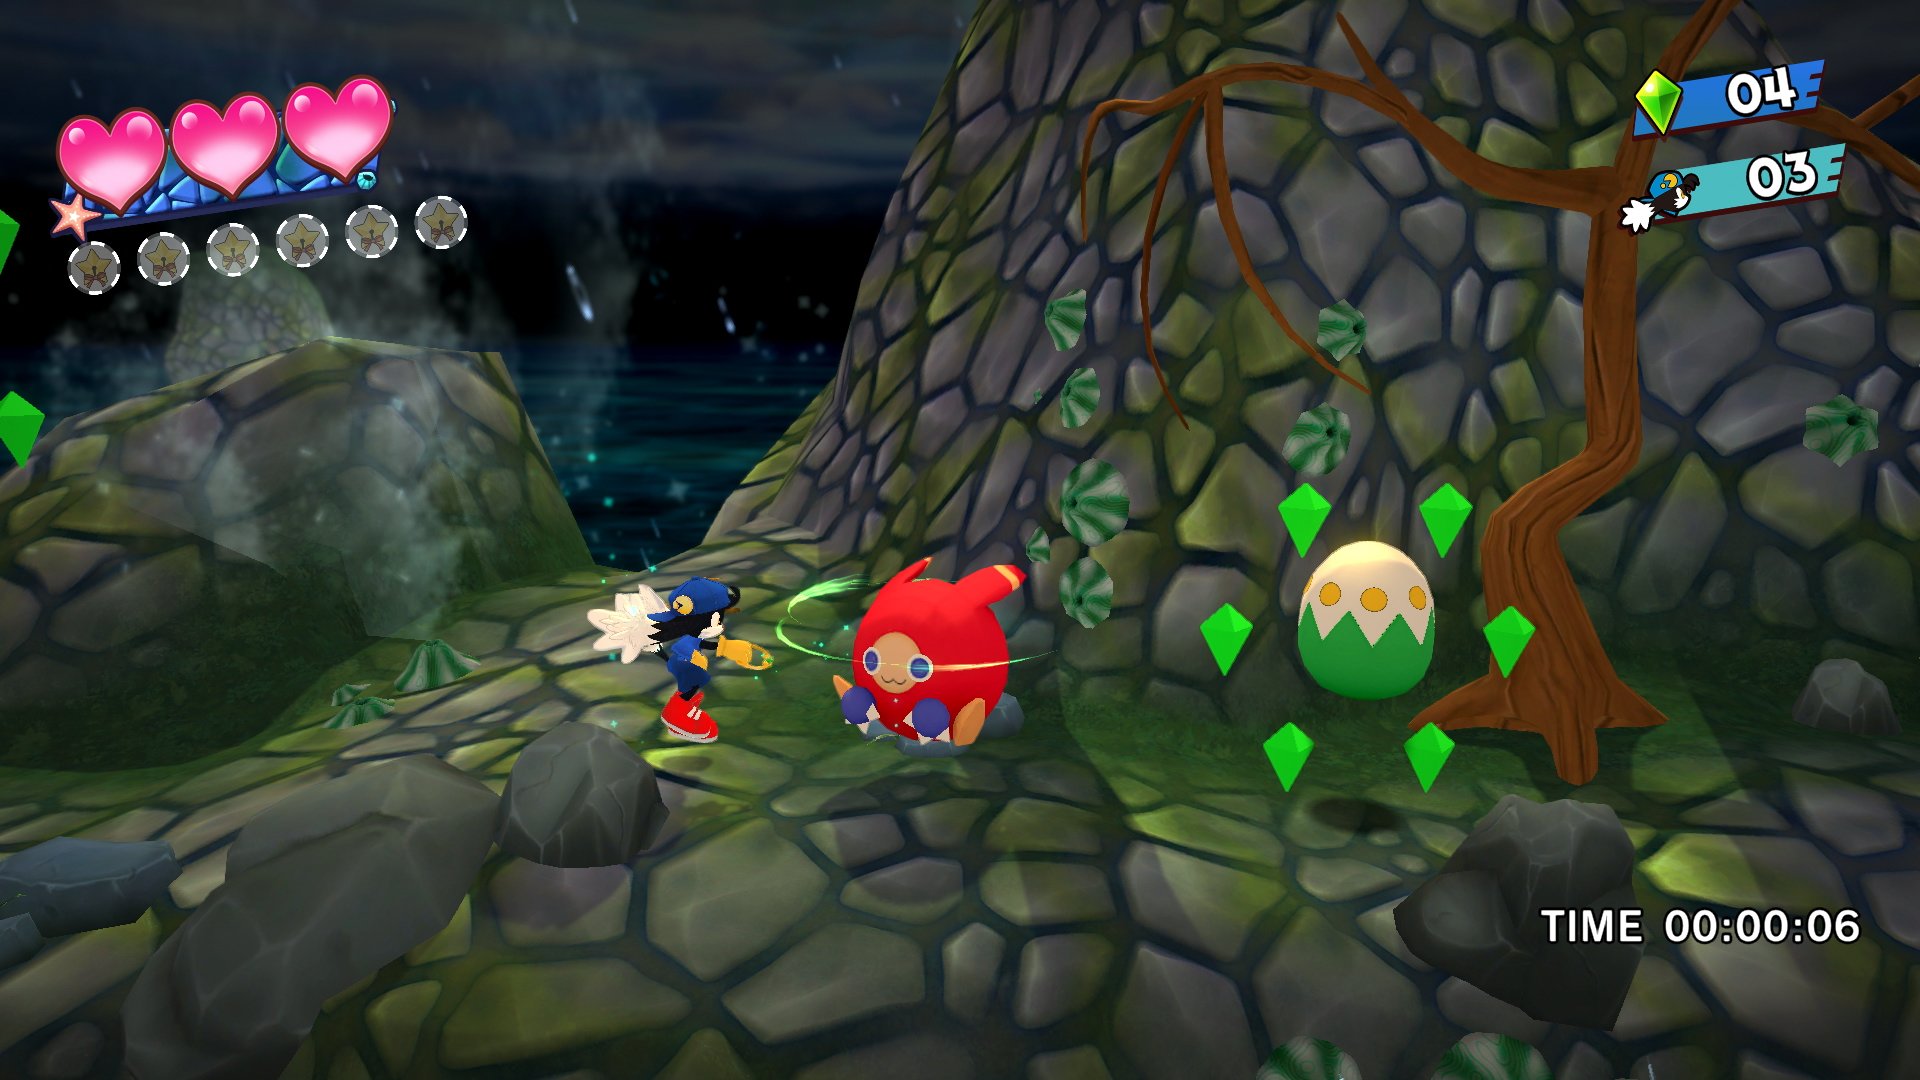 Captura de tela de Klonoa Phantasy Reverie Série de Klonoa encontrando um Moo na frente de um ovo cercado de gemas dentro de uma caverna.